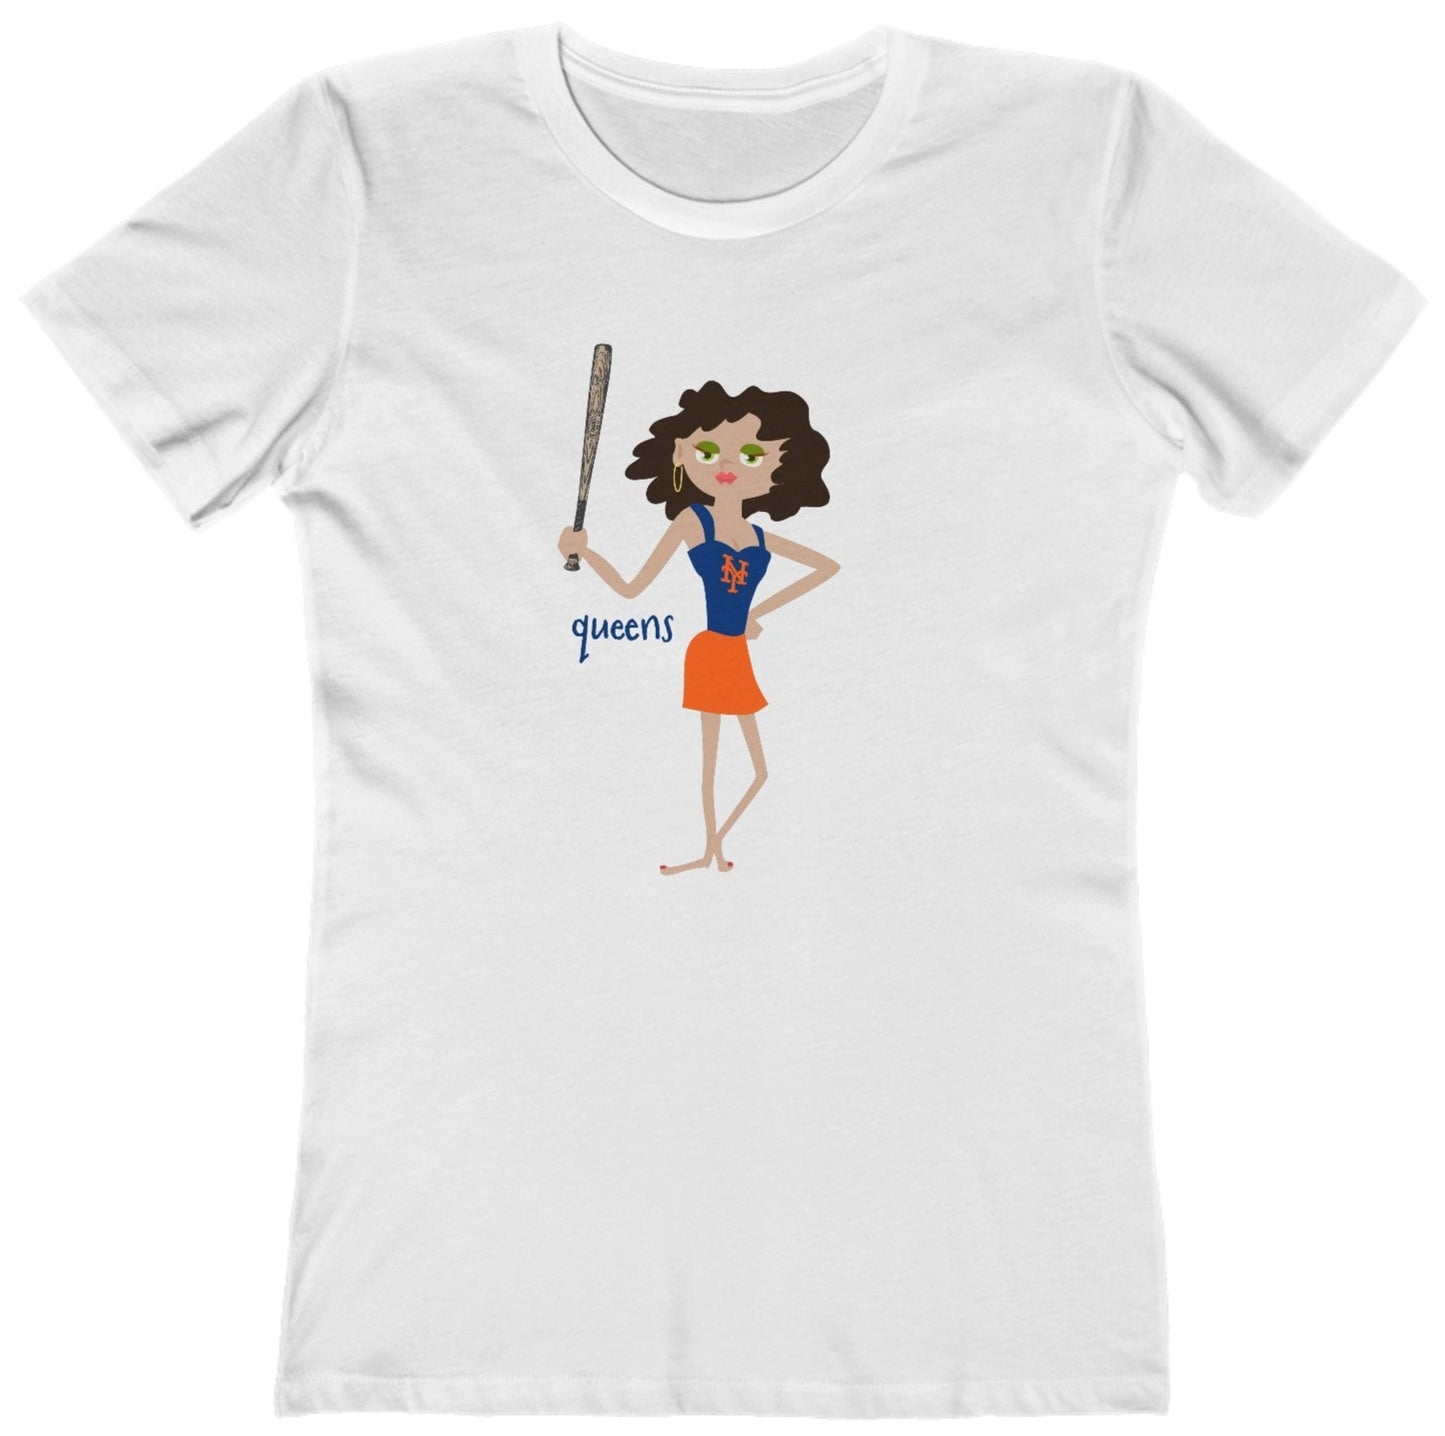 Queens - New York Baseball - Women's T-Shirt